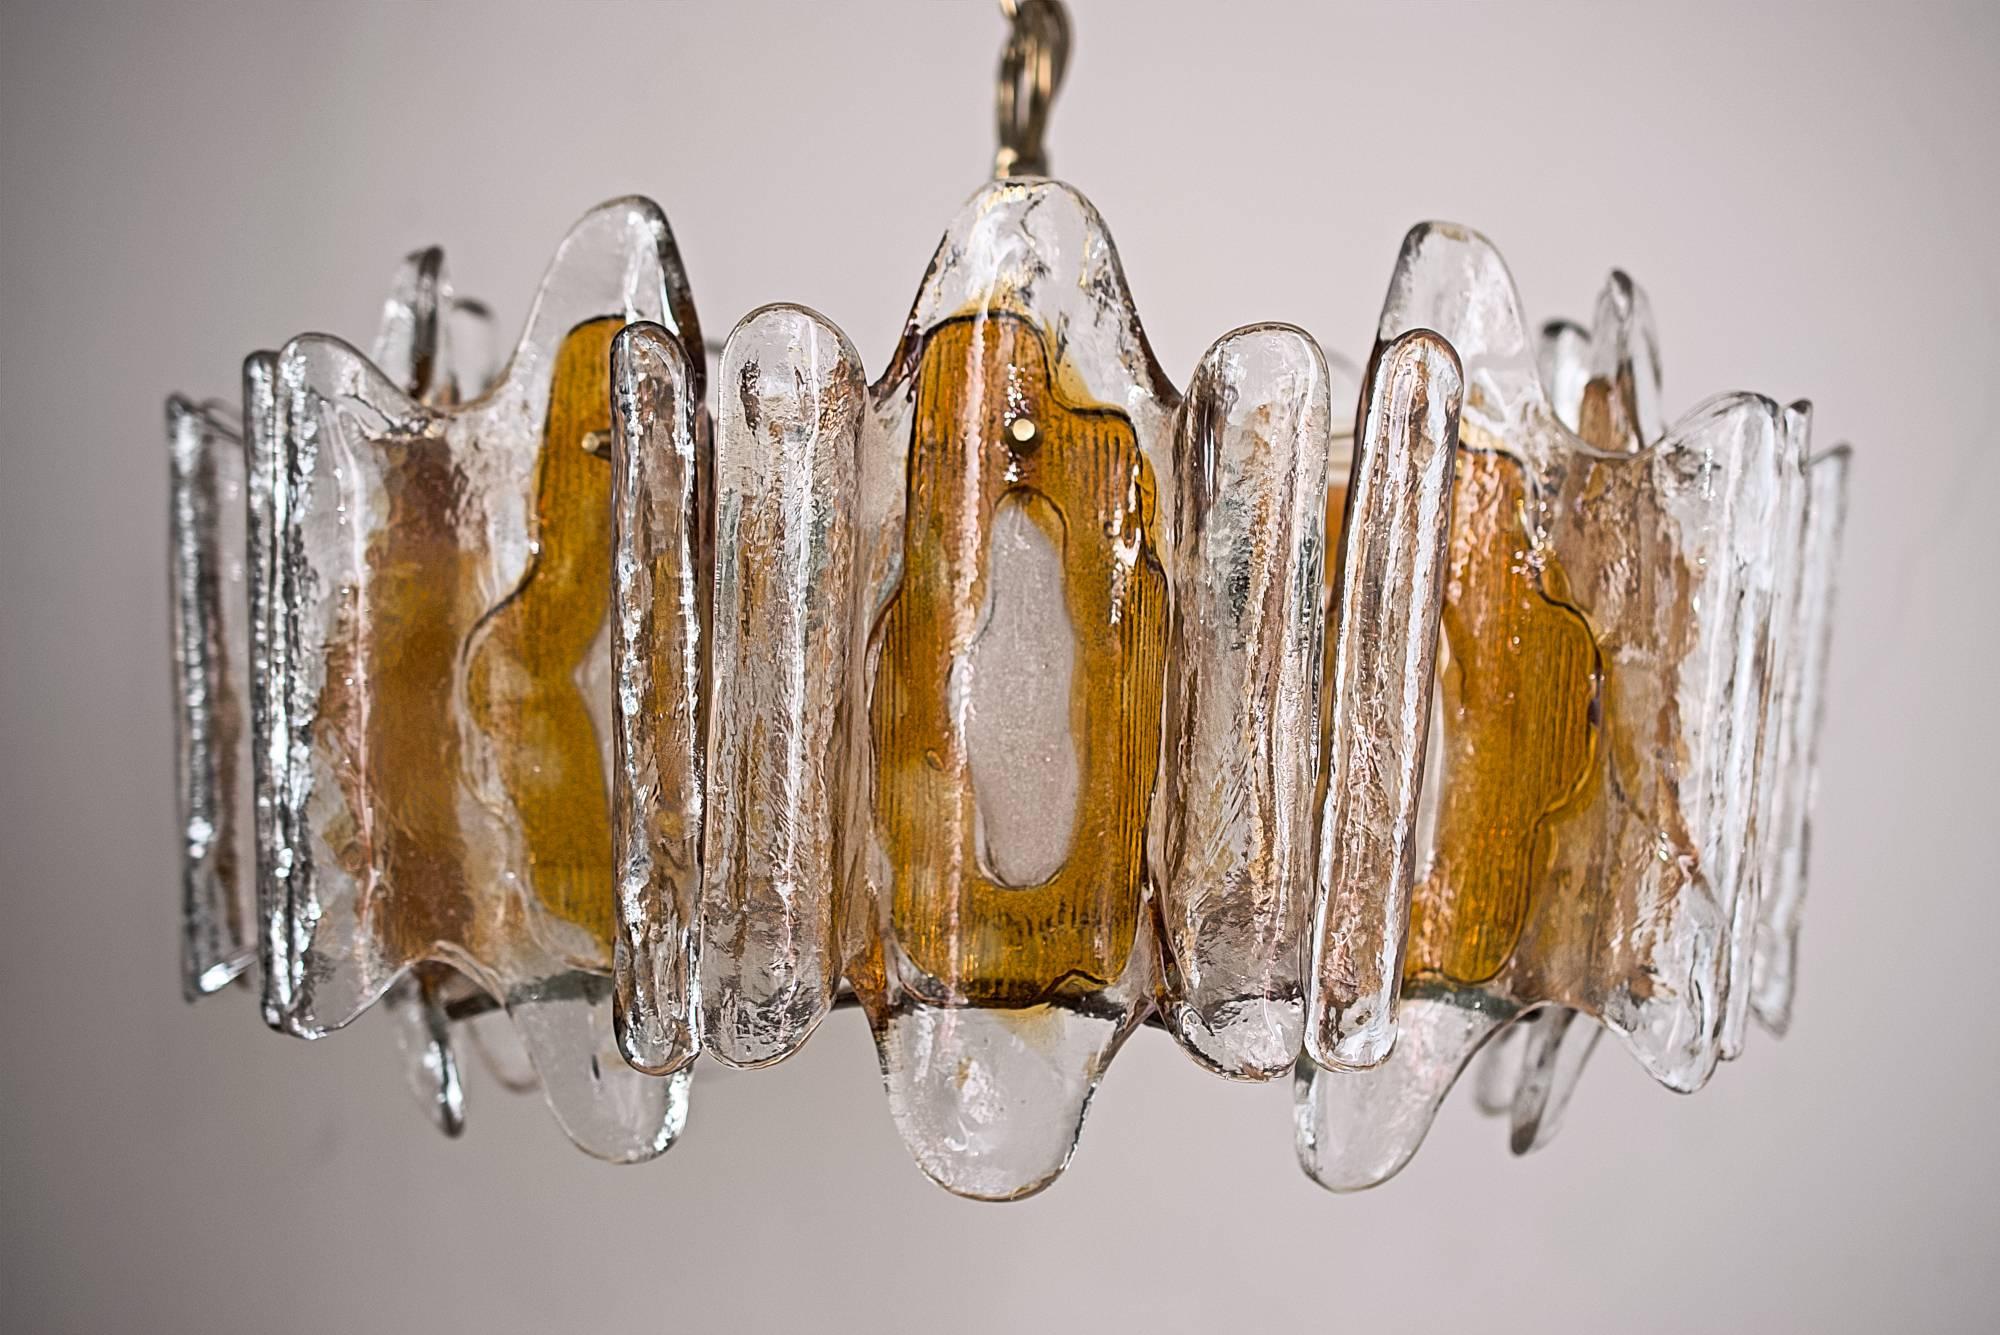 Kalmar textured orange glass chandelier, circa 1970
Original condition.